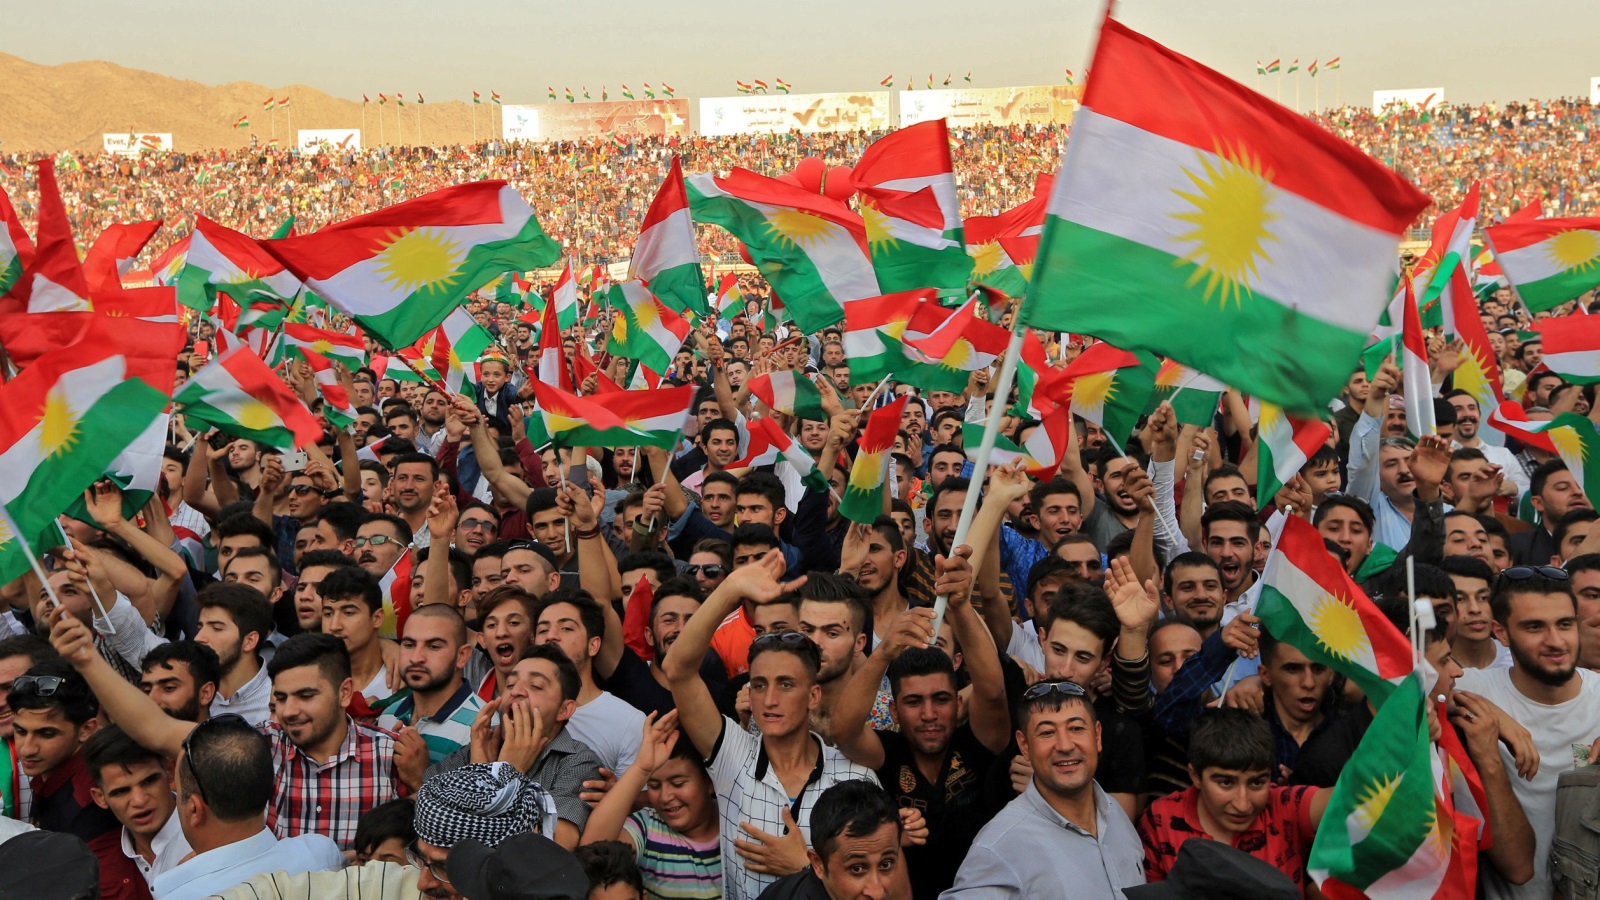 الاستفتاء في إقليم كردستان فرض على أنقرة مواقف متصاعدة لمغازلة الطرف الإيراني. والمعطيات الأمنية والاقتصادية تفرض على أنقرة عدم التسرع في فرض عقوبات اقتصادية على الإقليم